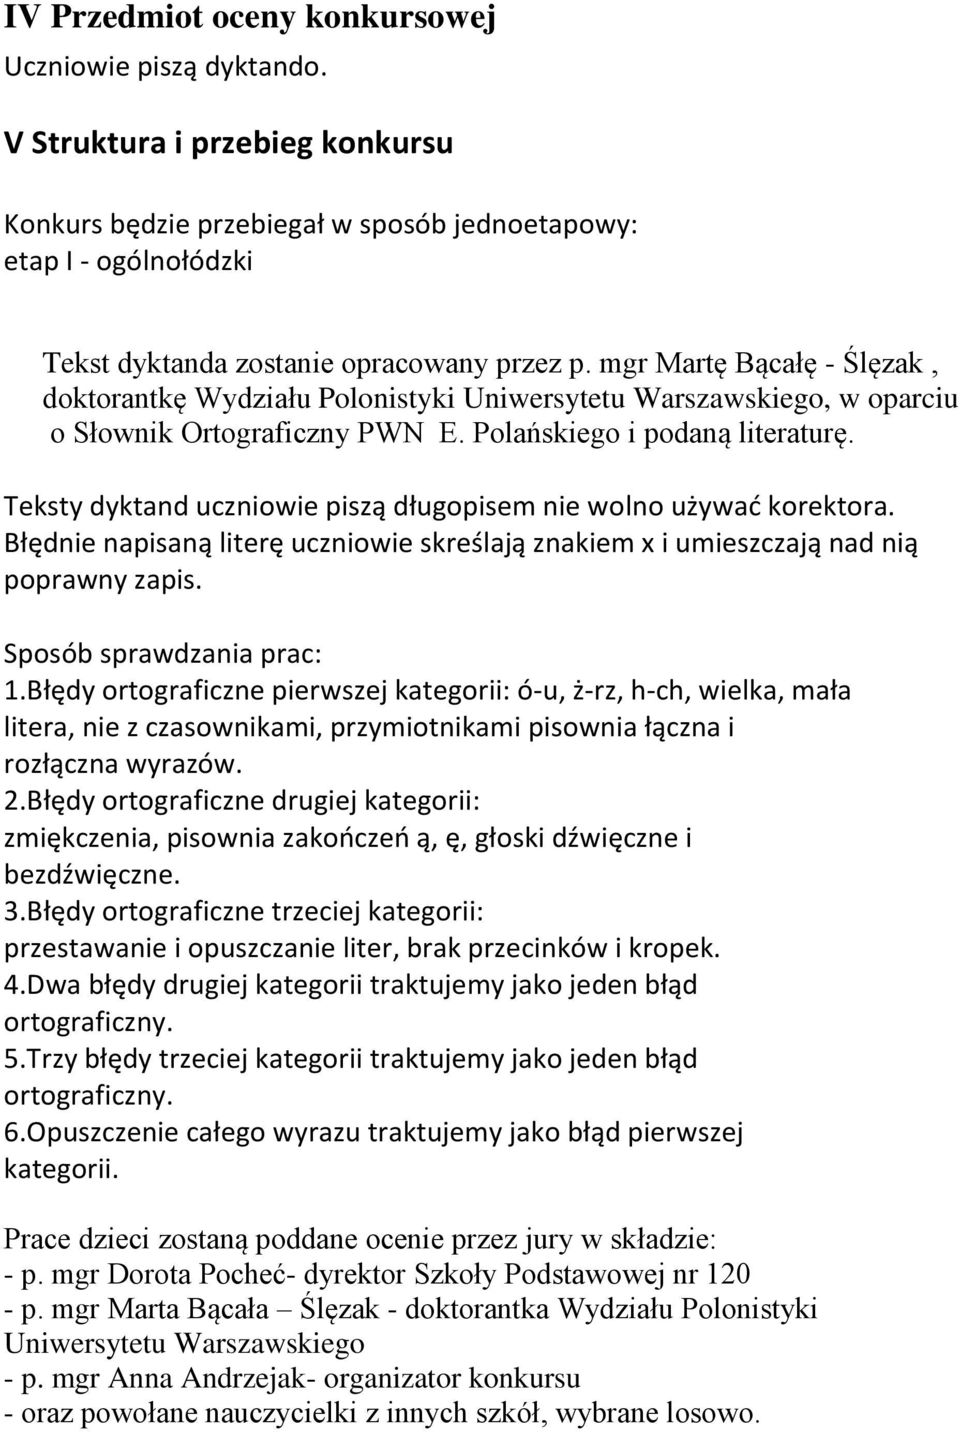 mgr Martę Bącałę - Ślęzak, doktorantkę Wydziału Polonistyki Uniwersytetu Warszawskiego, w oparciu o Słownik Ortograficzny PWN E. Polańskiego i podaną literaturę.